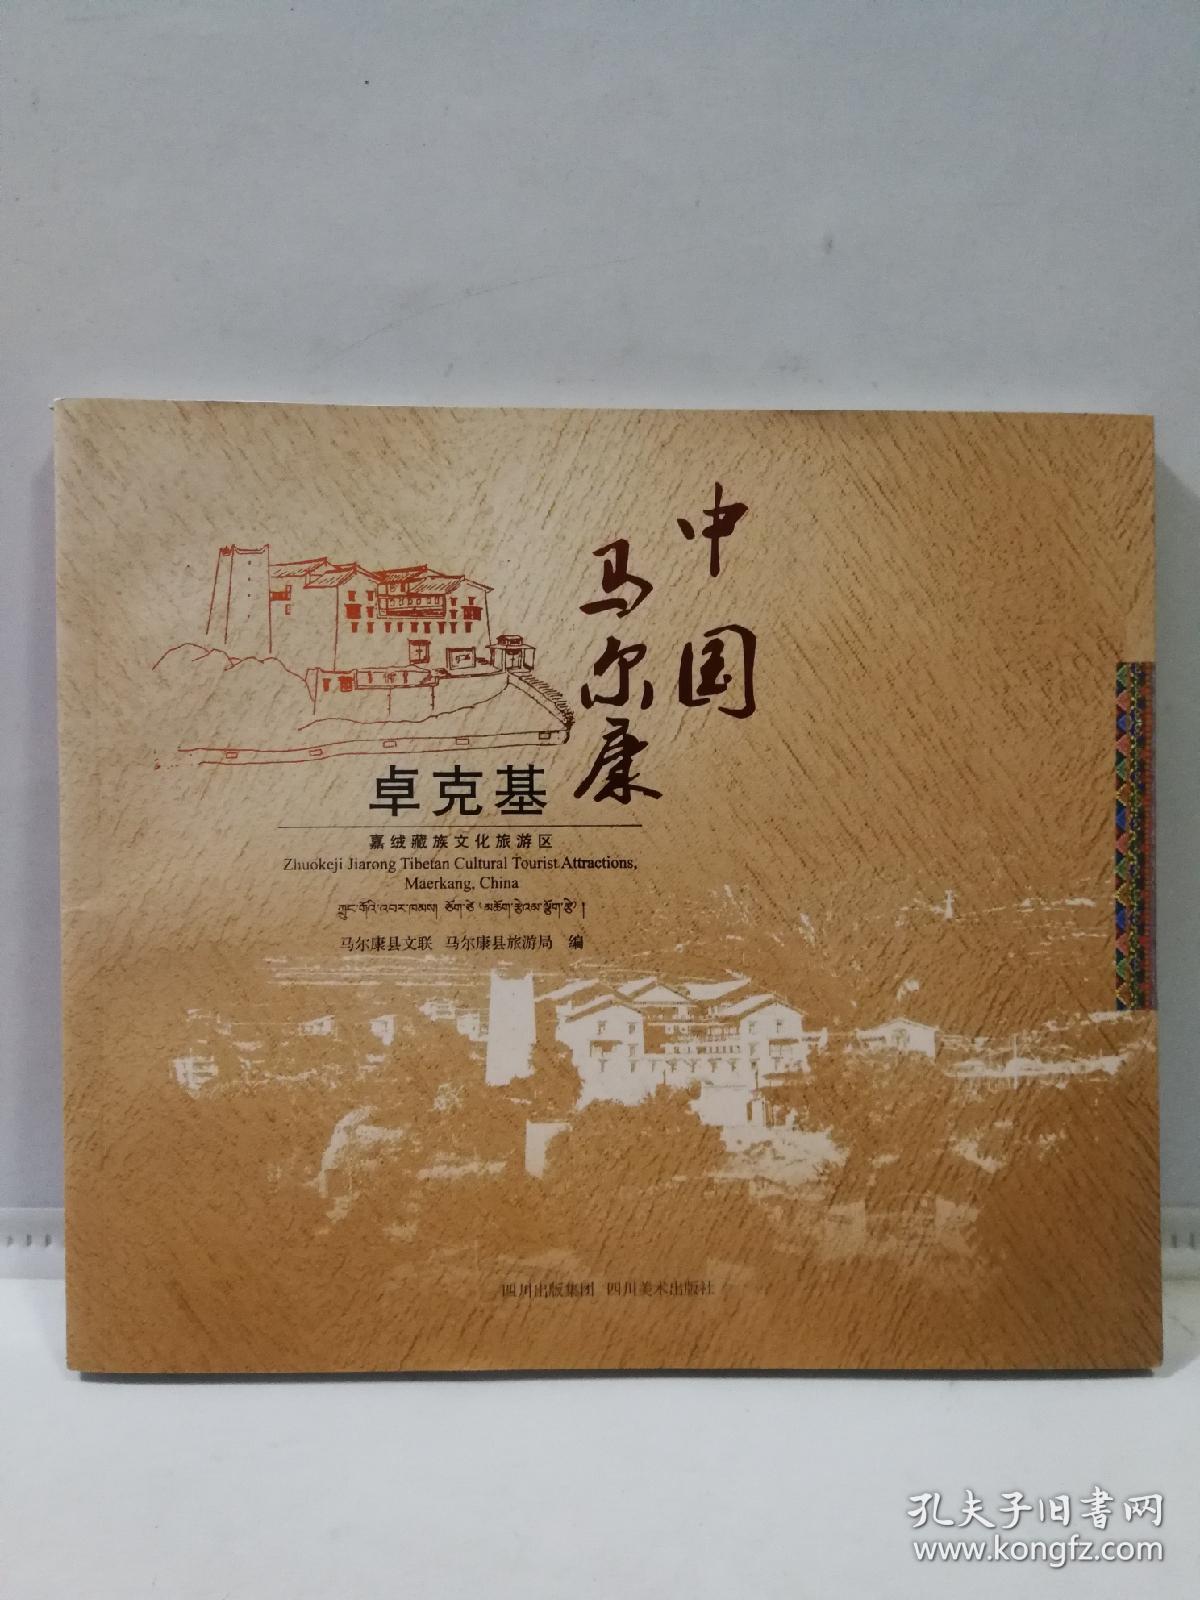 中国·马尔康 : 卓克基嘉绒藏族文化旅游区 : 中文
、英文、藏文